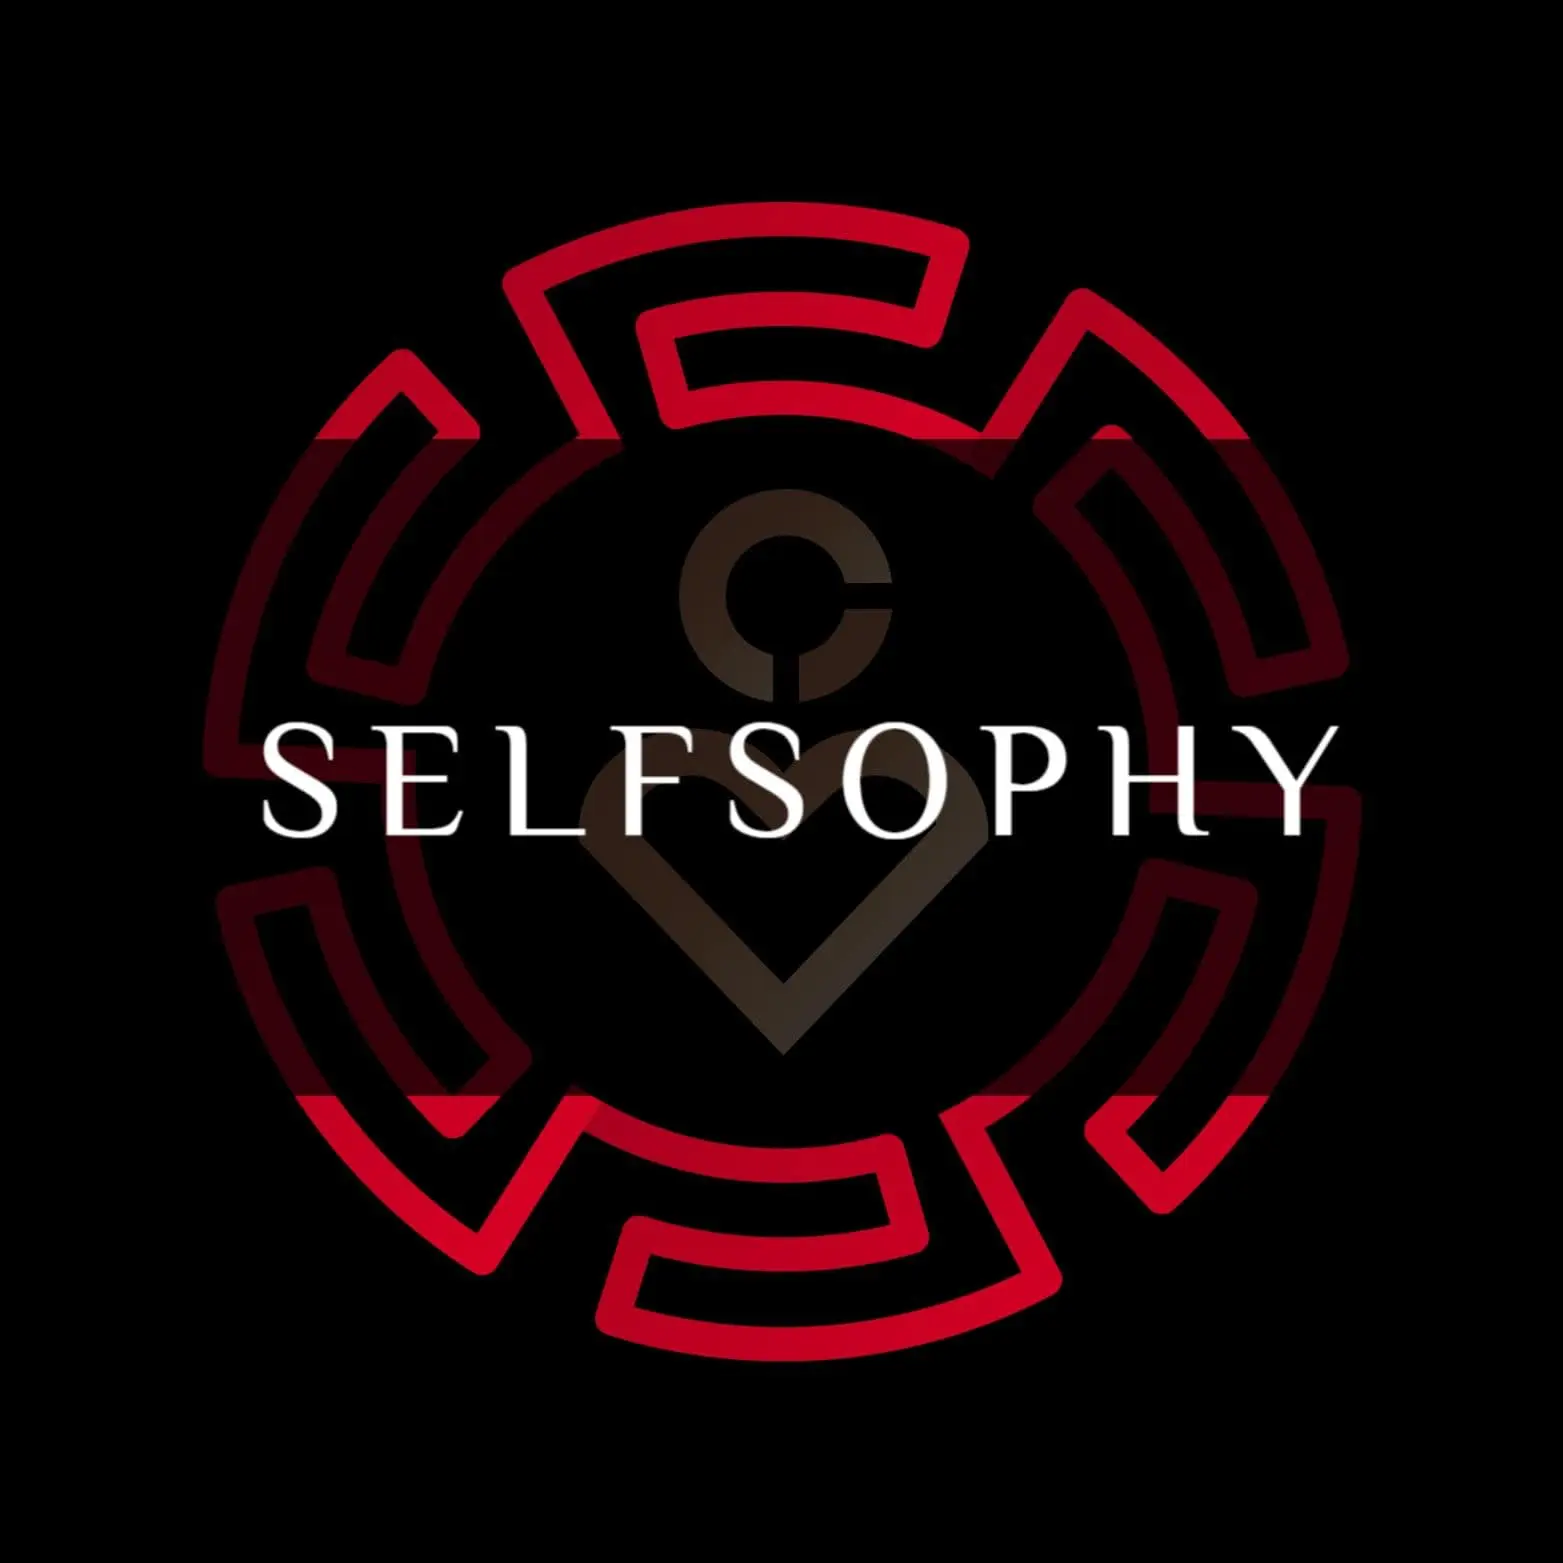 Selfsophy